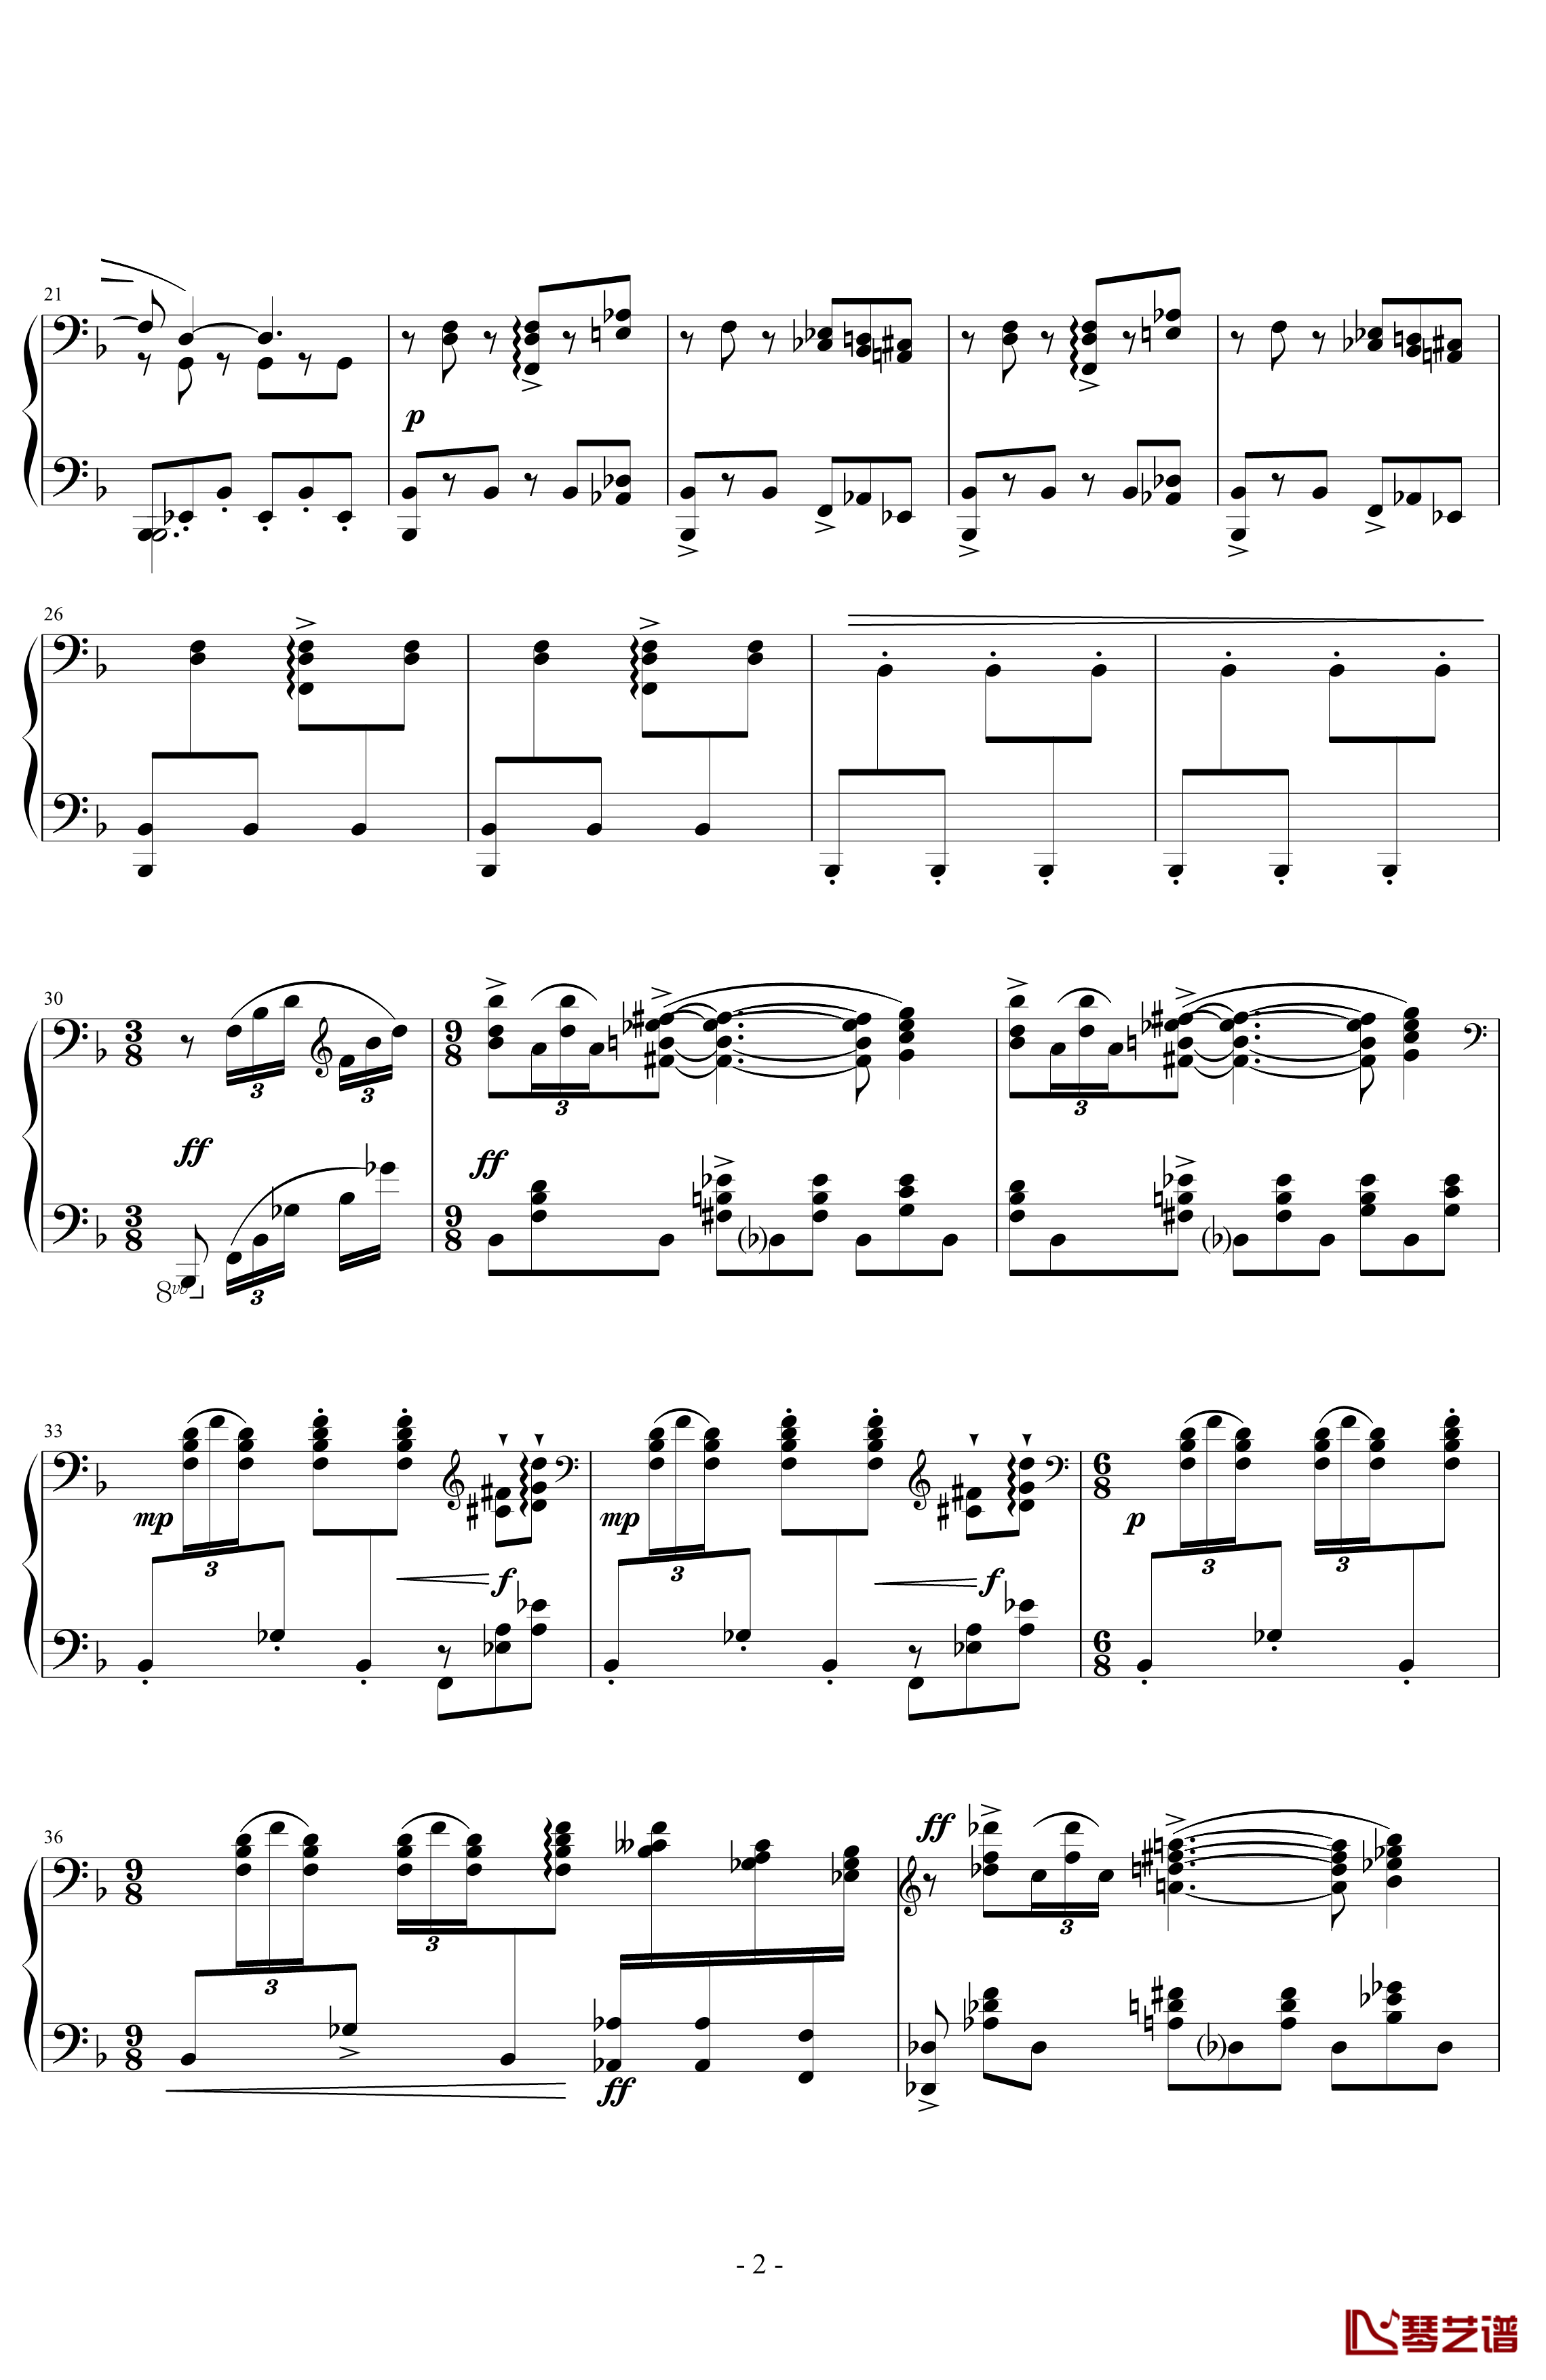 丑角的晨歌钢琴谱-组曲第4首-拉威尔-Ravel2